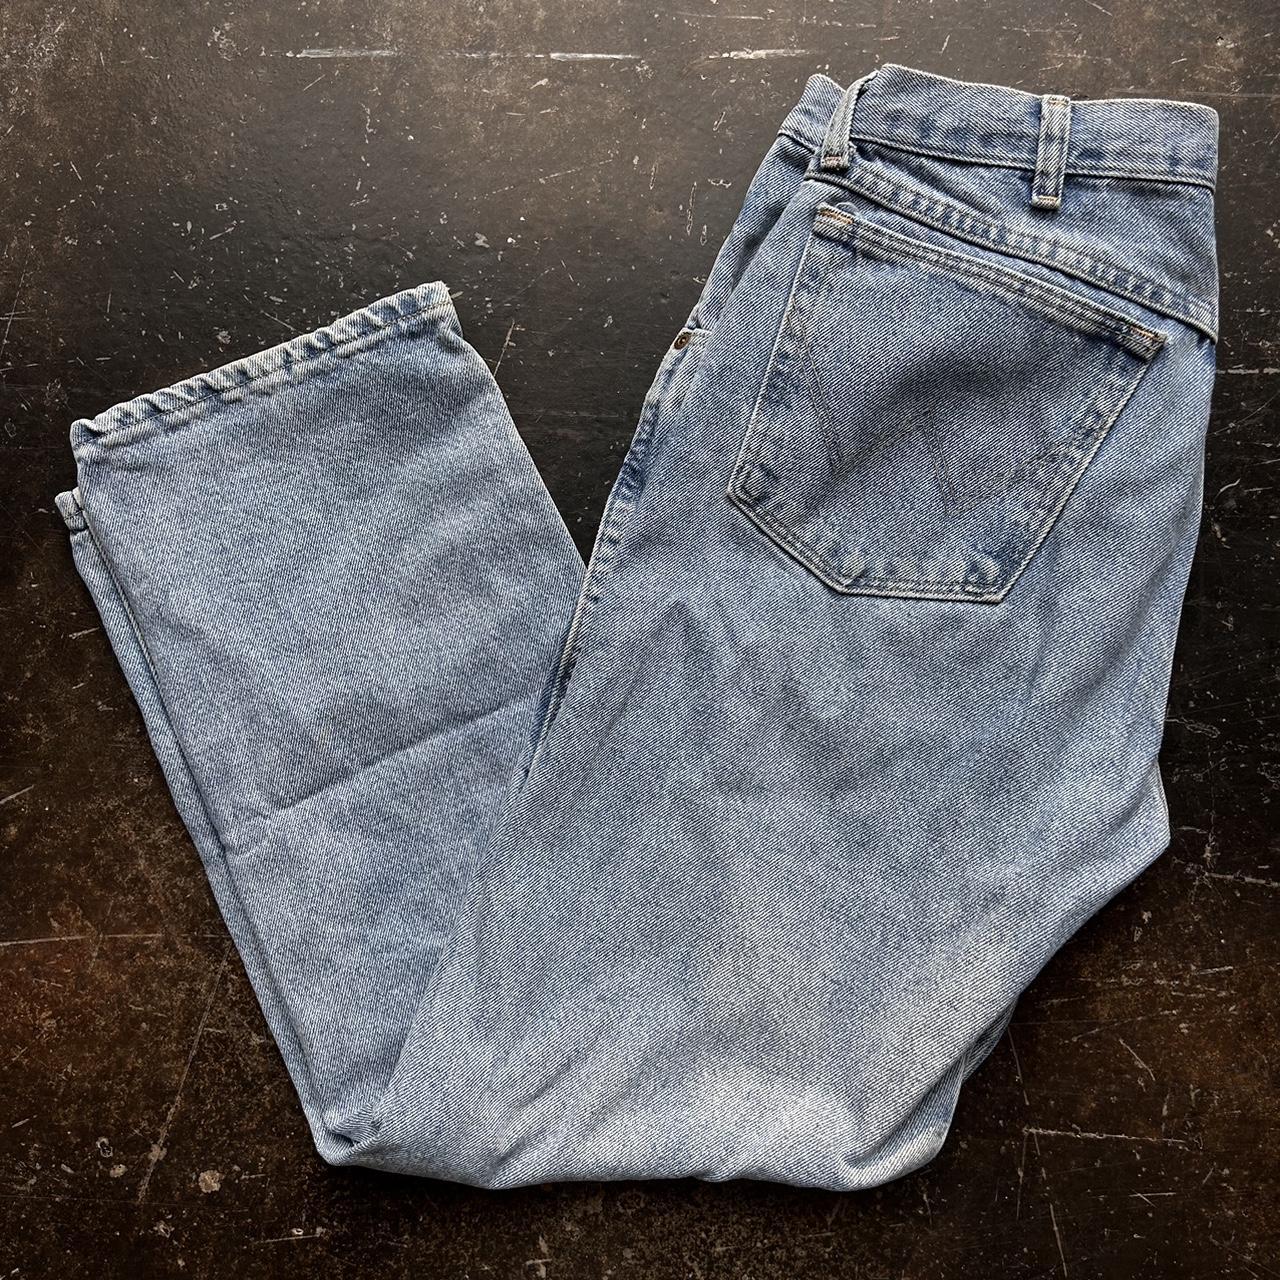 Wrangler Men's Blue Jeans (2)